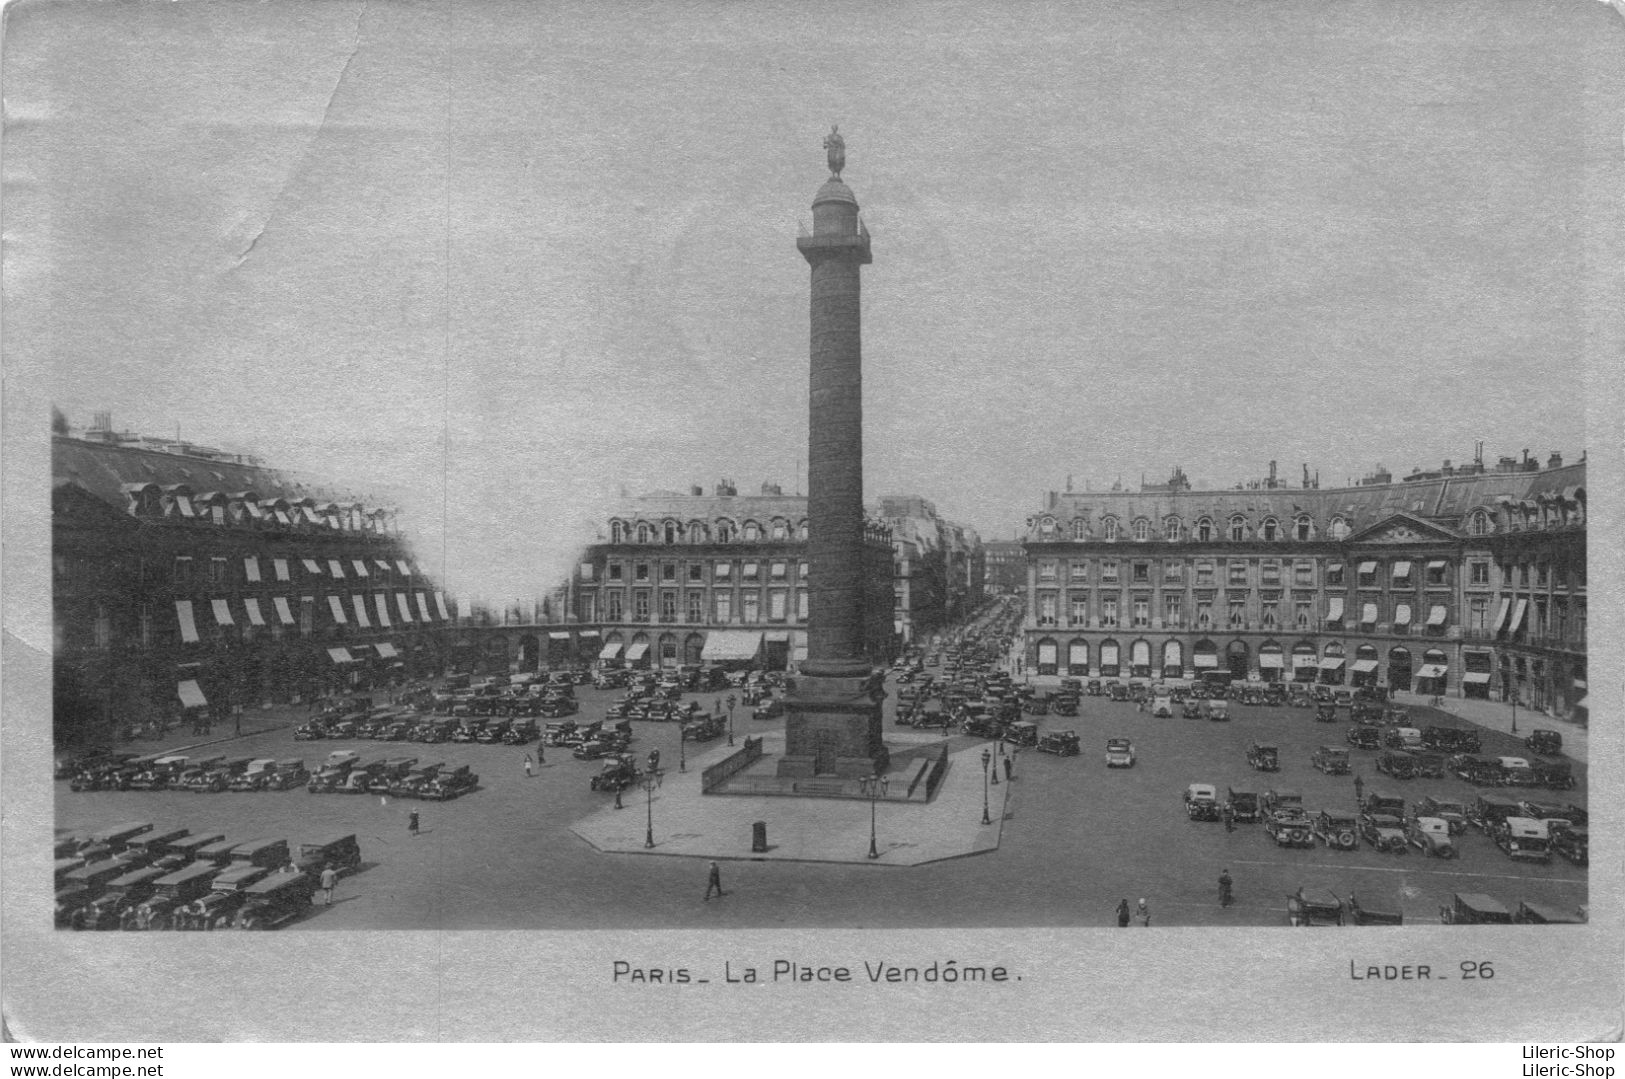 PARIS La Place Vendôme. LADER 26 - Squares